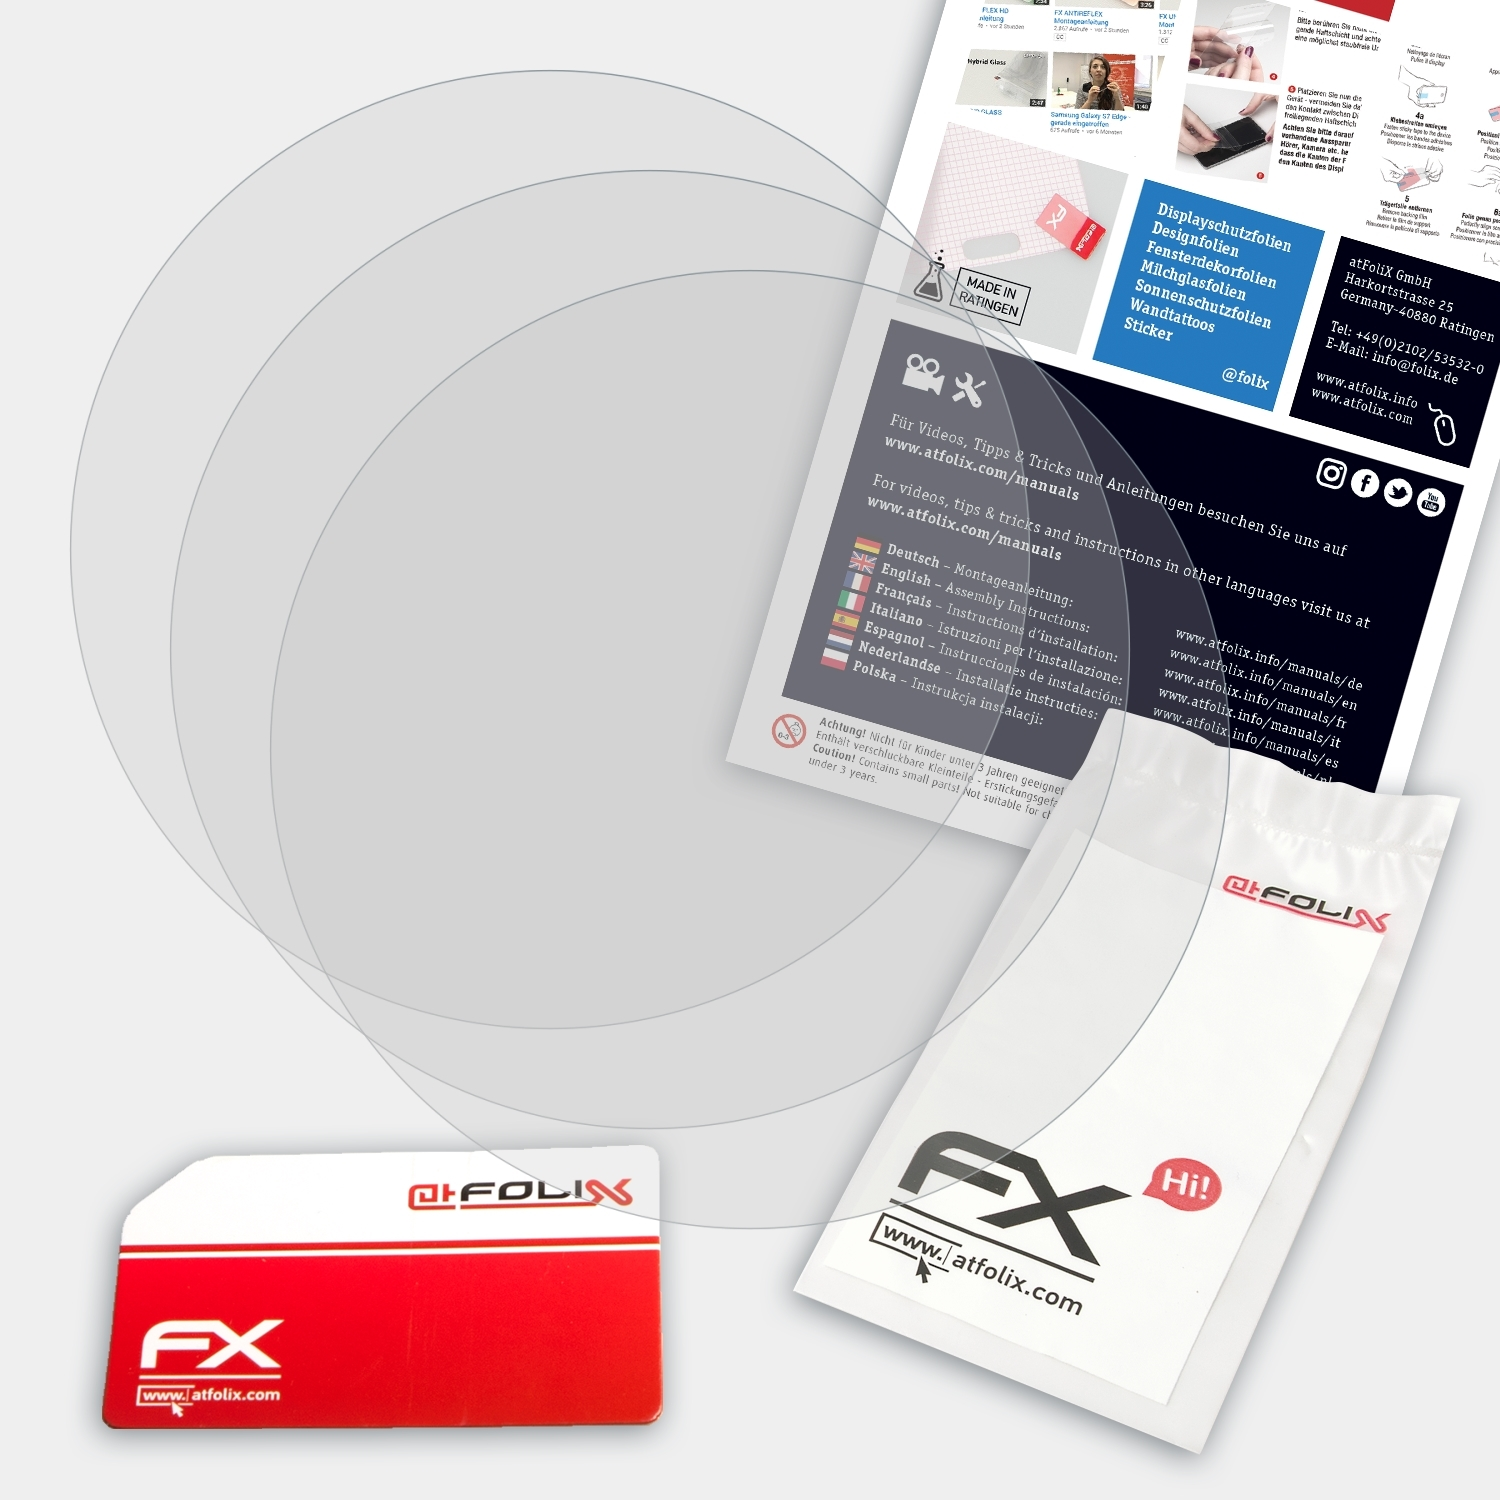 ATFOLIX 3x FX-Antireflex Displayschutz(für 2) MyKronoz ZeCircle